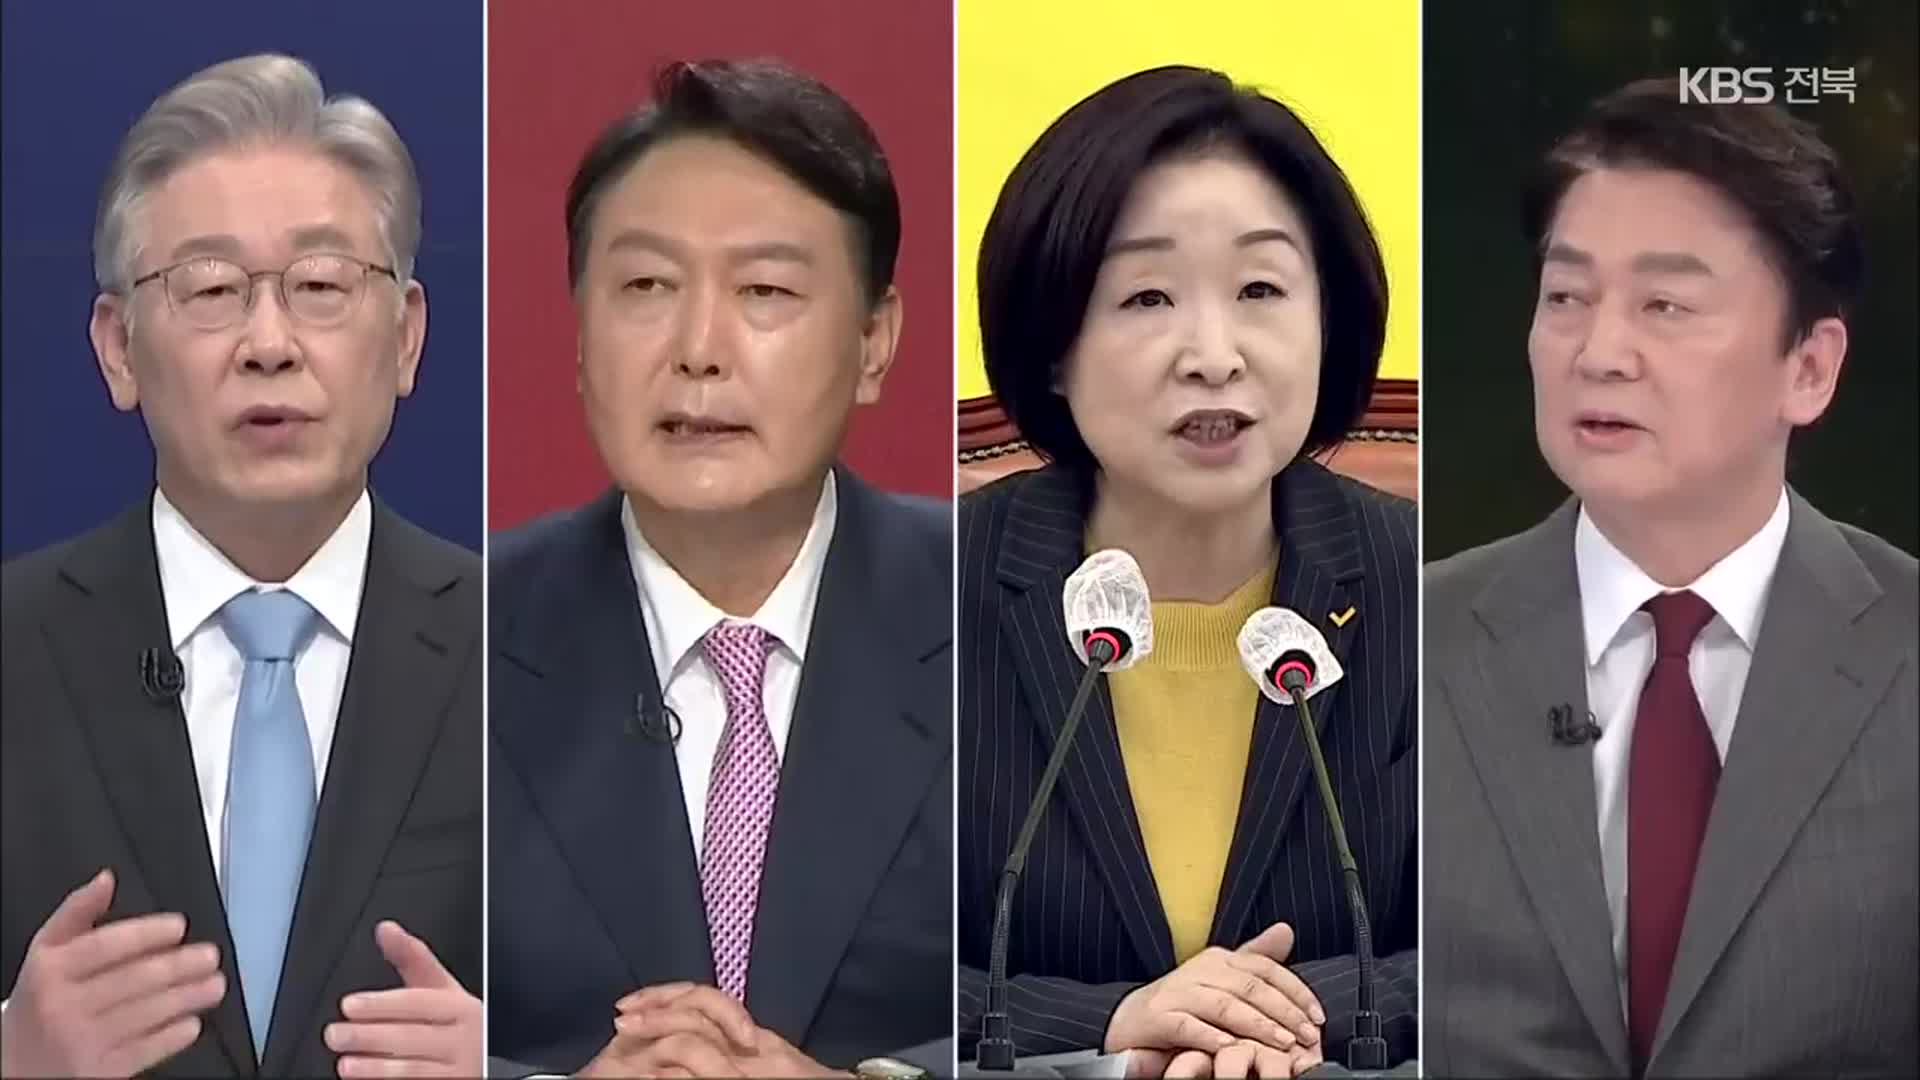 “이-윤 양자 TV토론 불가”…곧 다자토론 실무협상